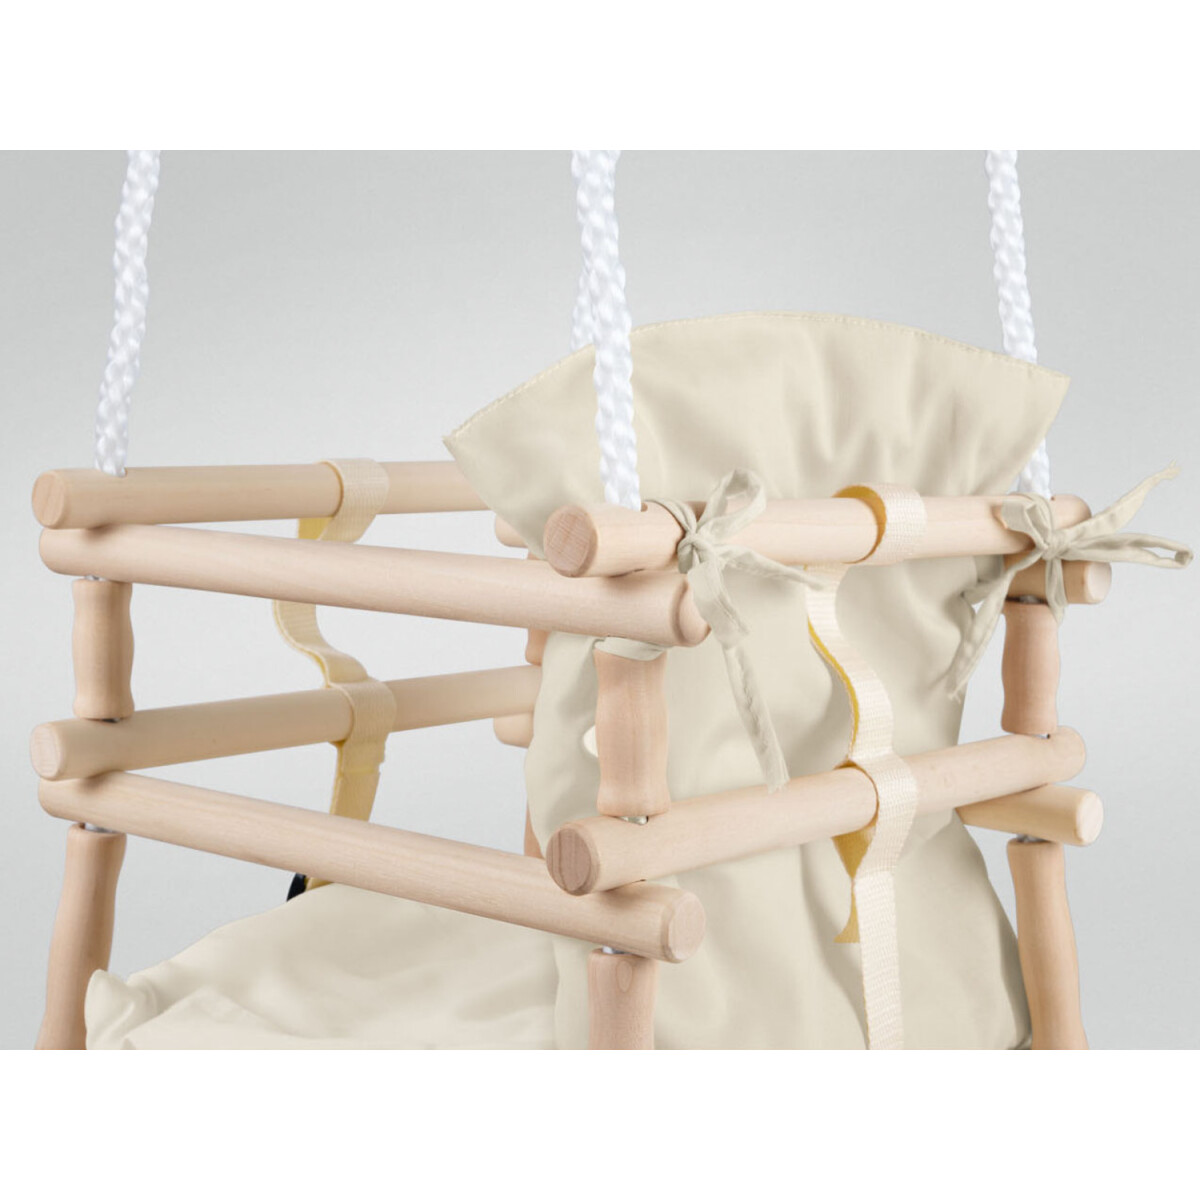 Playtive Baby Holzschaukel mit Sicherheitssitz (weiß) - B-Ware neuwertig,  16,99 €